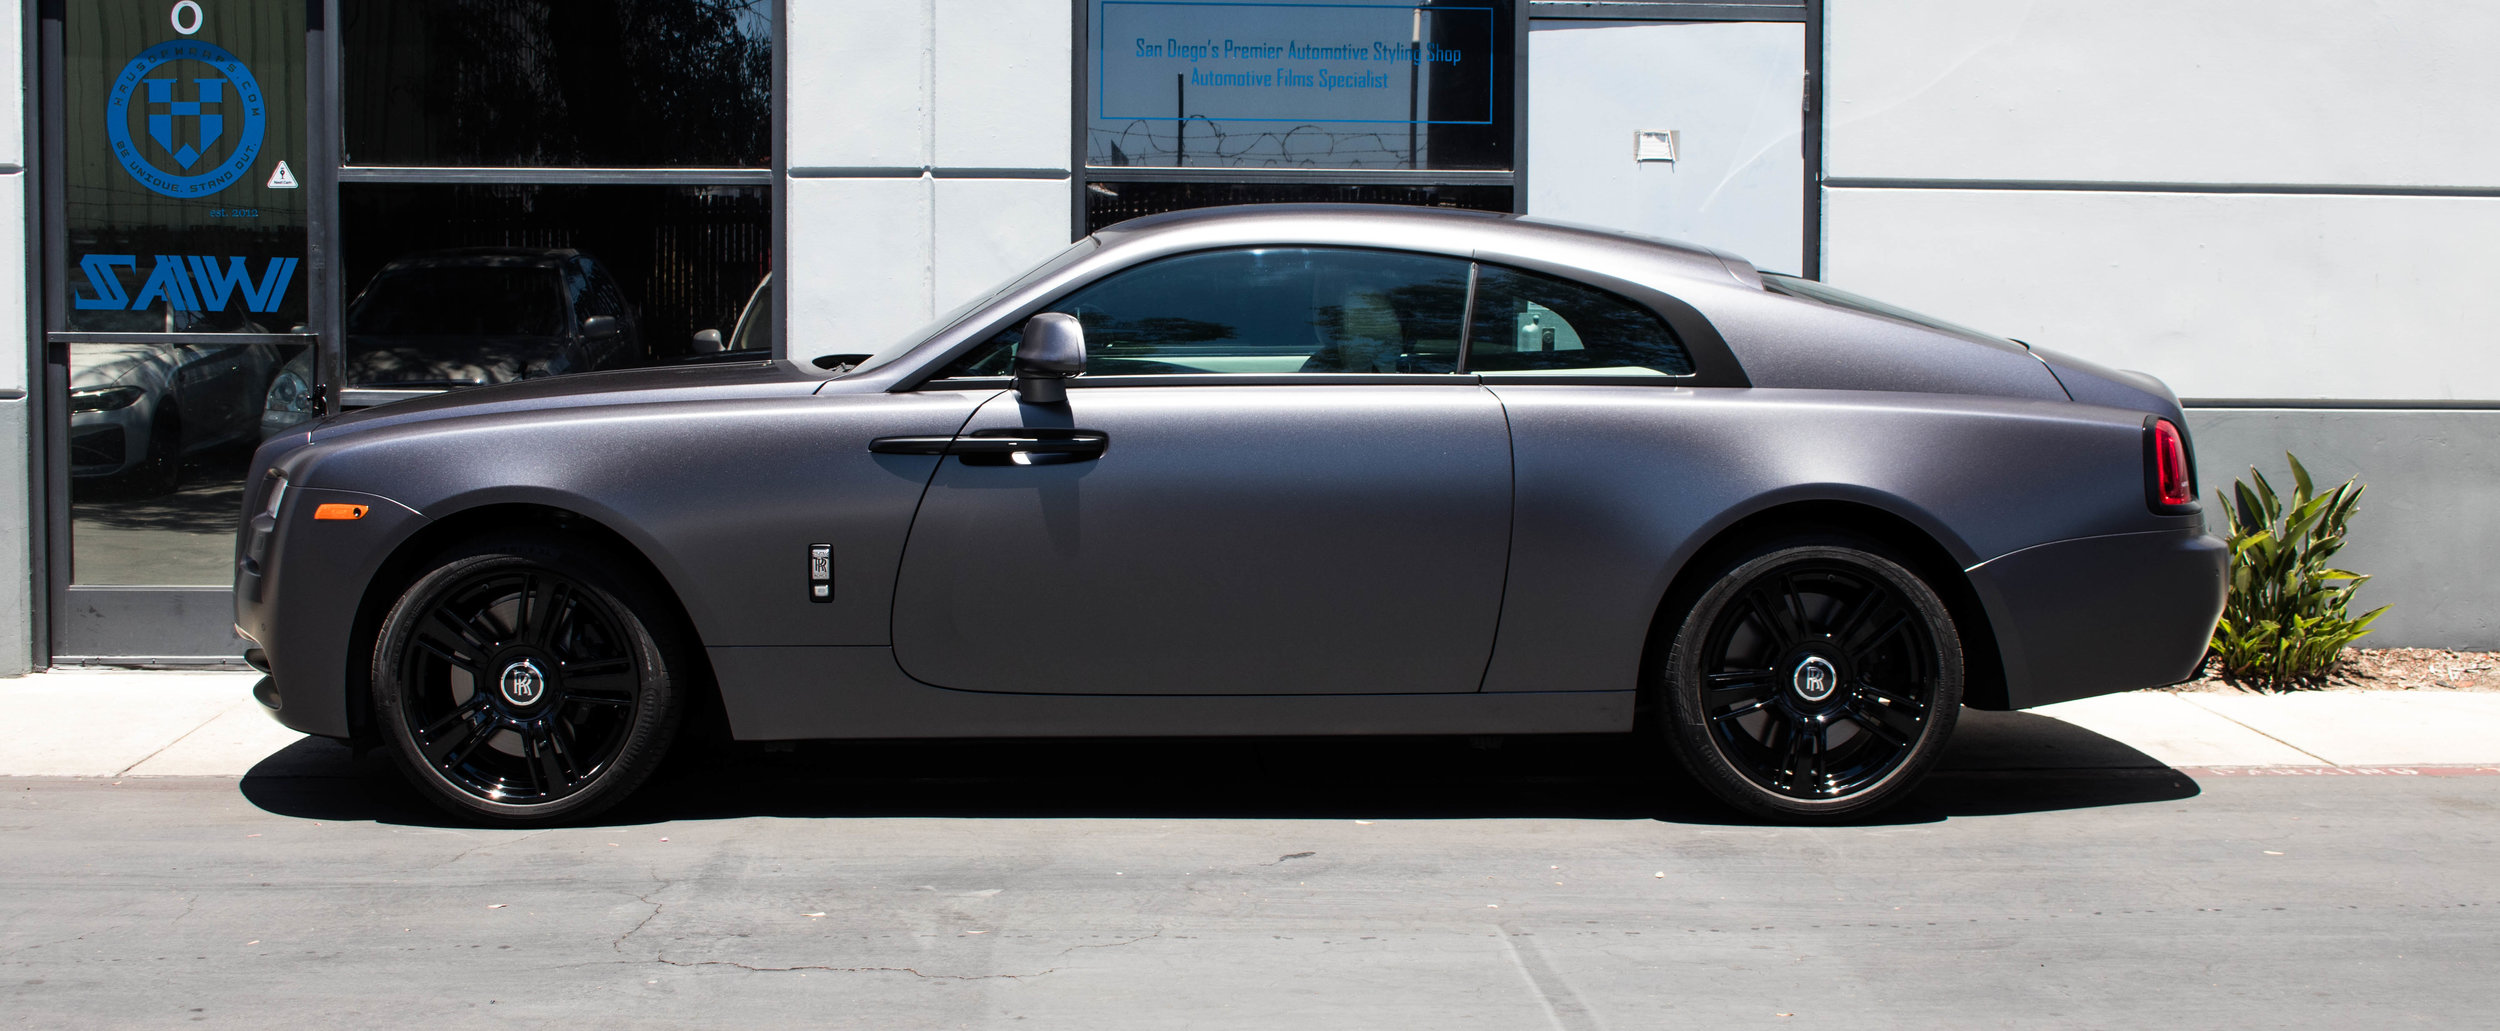 Rolls Royce Side Shot.jpg